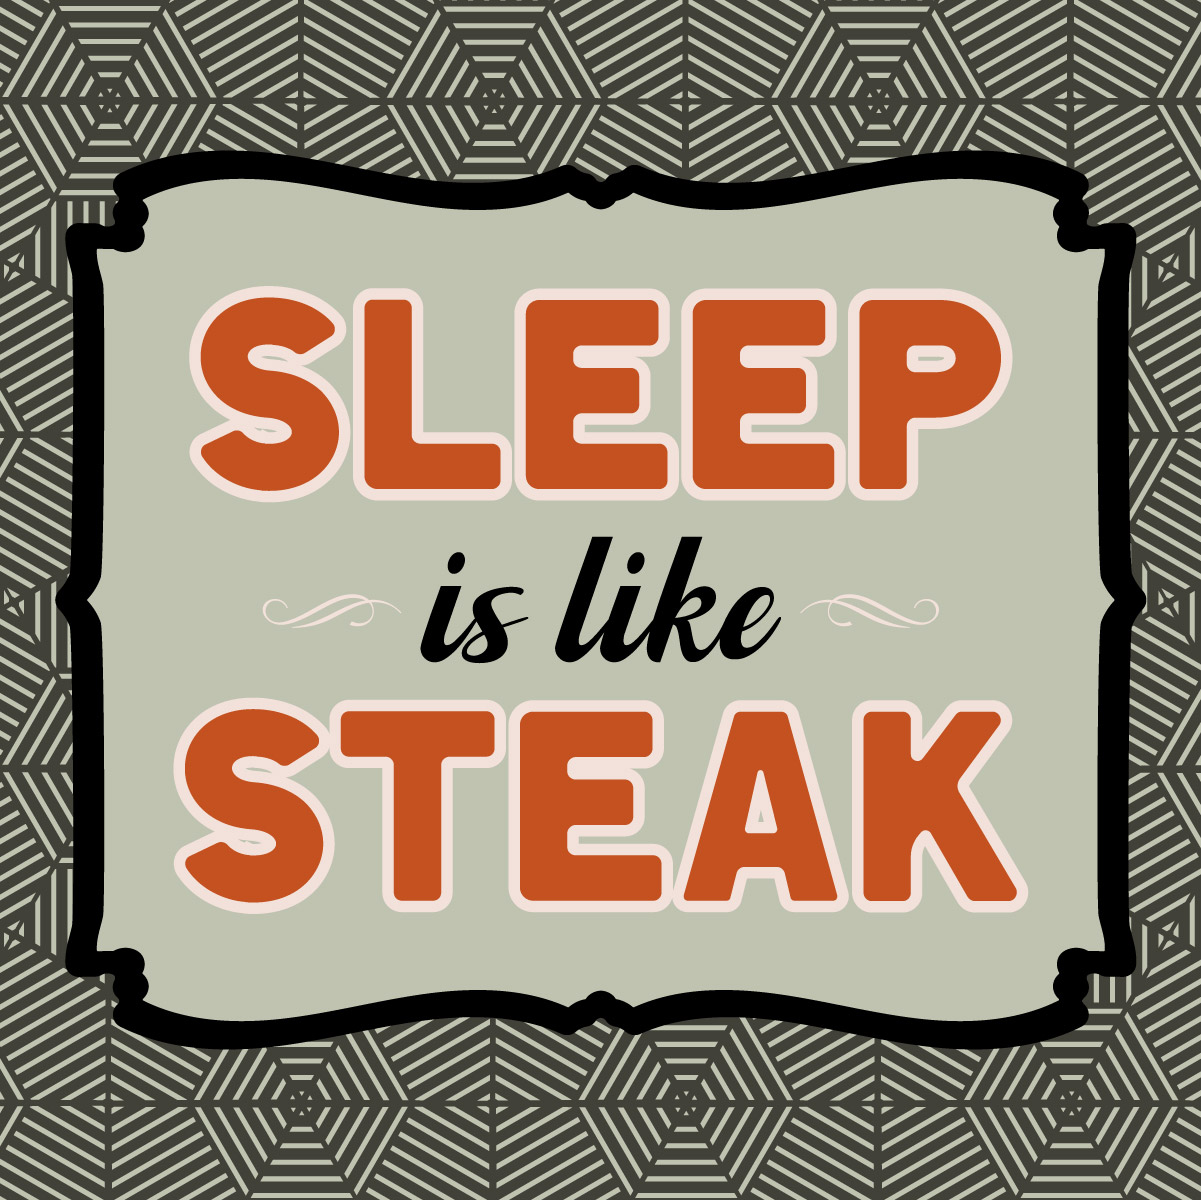 Sleep is like steak